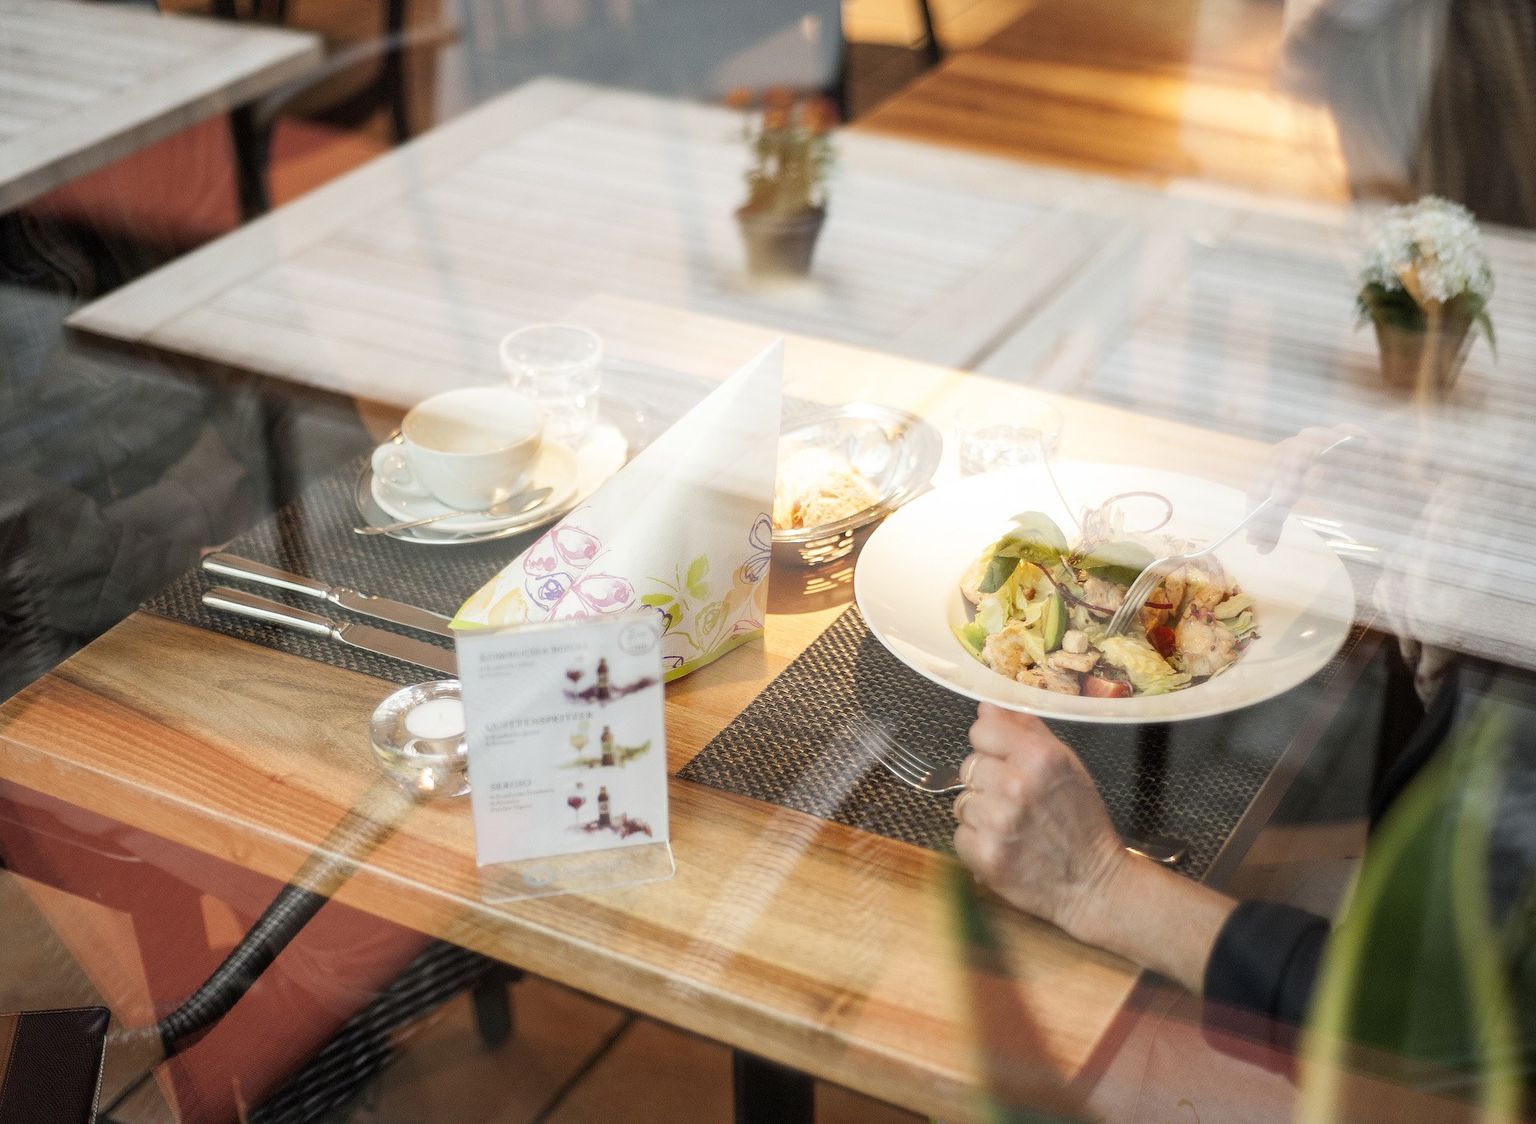 Ein Tisch im Restaurant Eugen mit einem gemischten Salatteller und einem kleinen Kaffee, betrachtet durch das Fenster. Im Bild sichtbar ist die Spieglung der Tische im Aussenbereich.